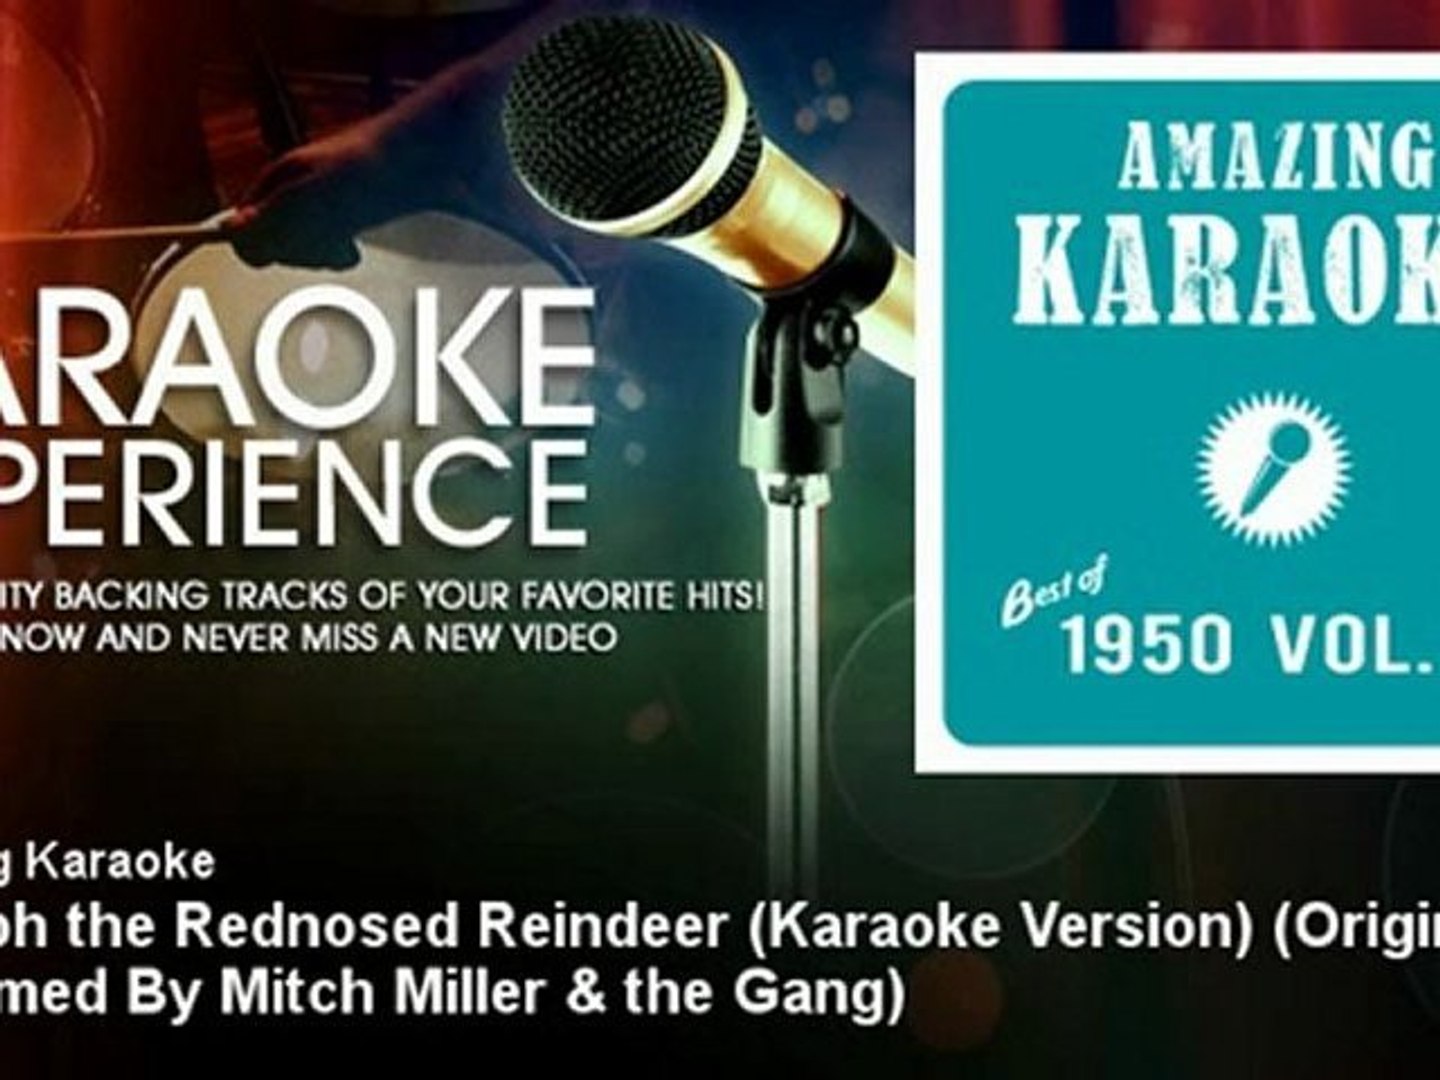 Amazing Karaoke - Rudolph the Rednosed Reindeer (Kara